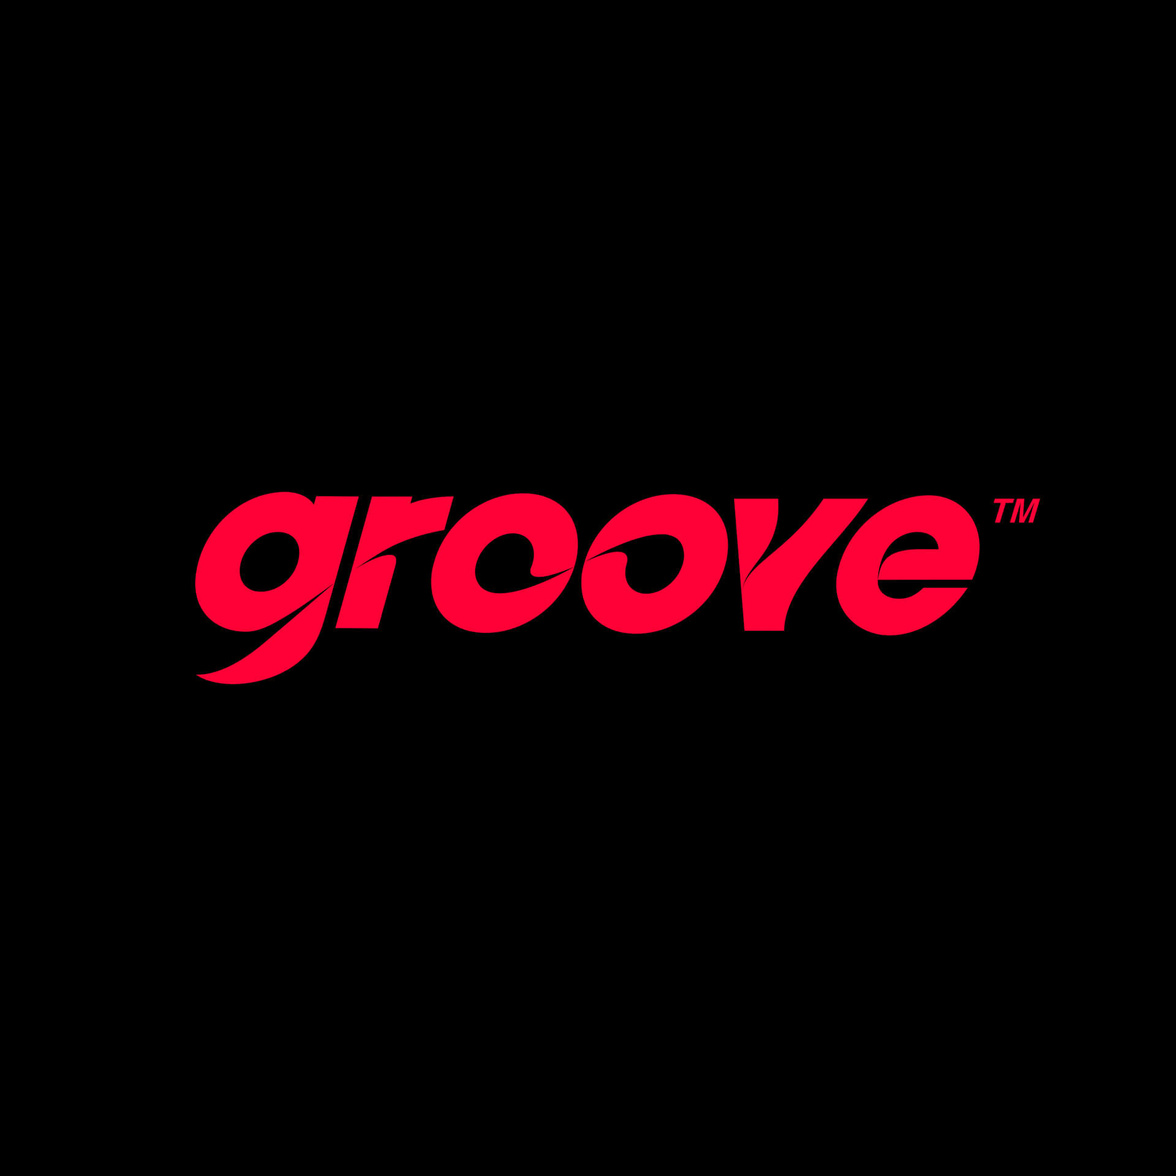 Groove ~ branding